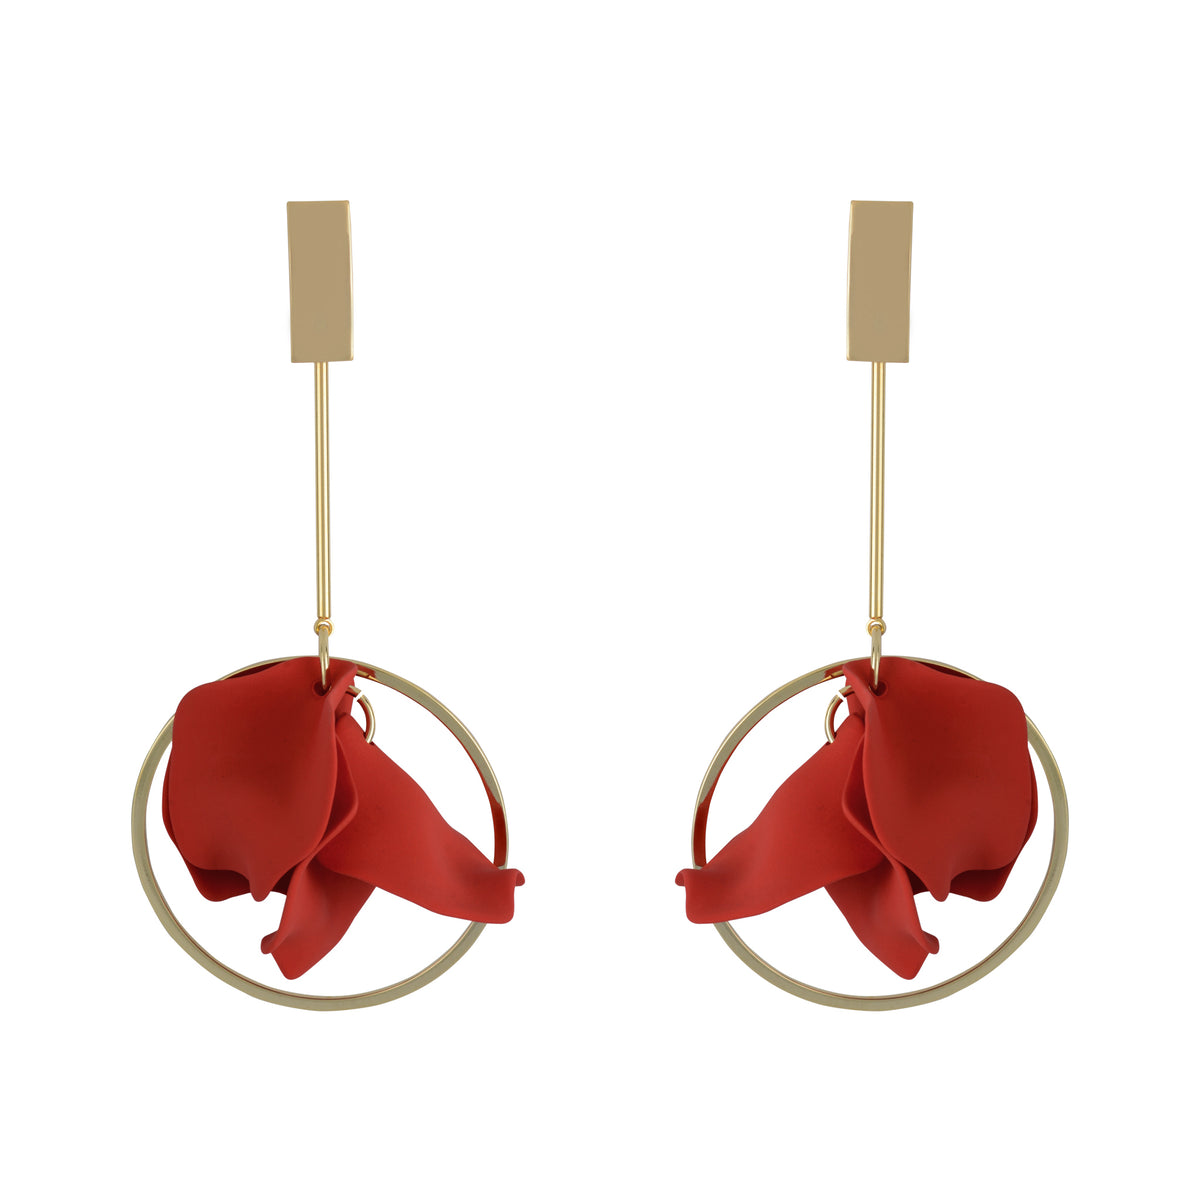 Suspended Pendulum Petal Earrings - Scarlet